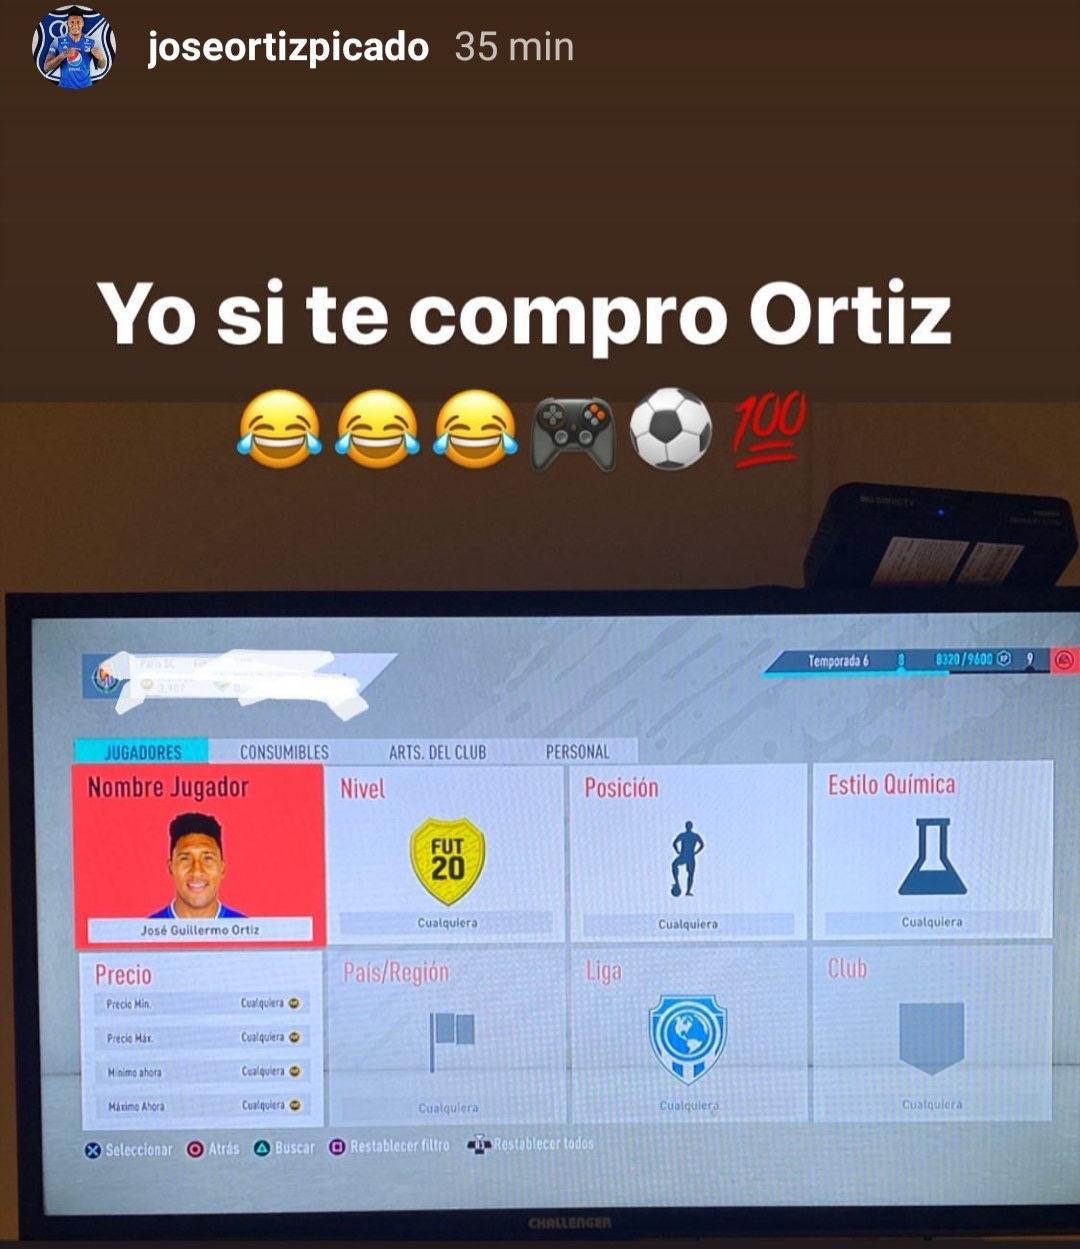 'Tico' Ortiz, Instagram